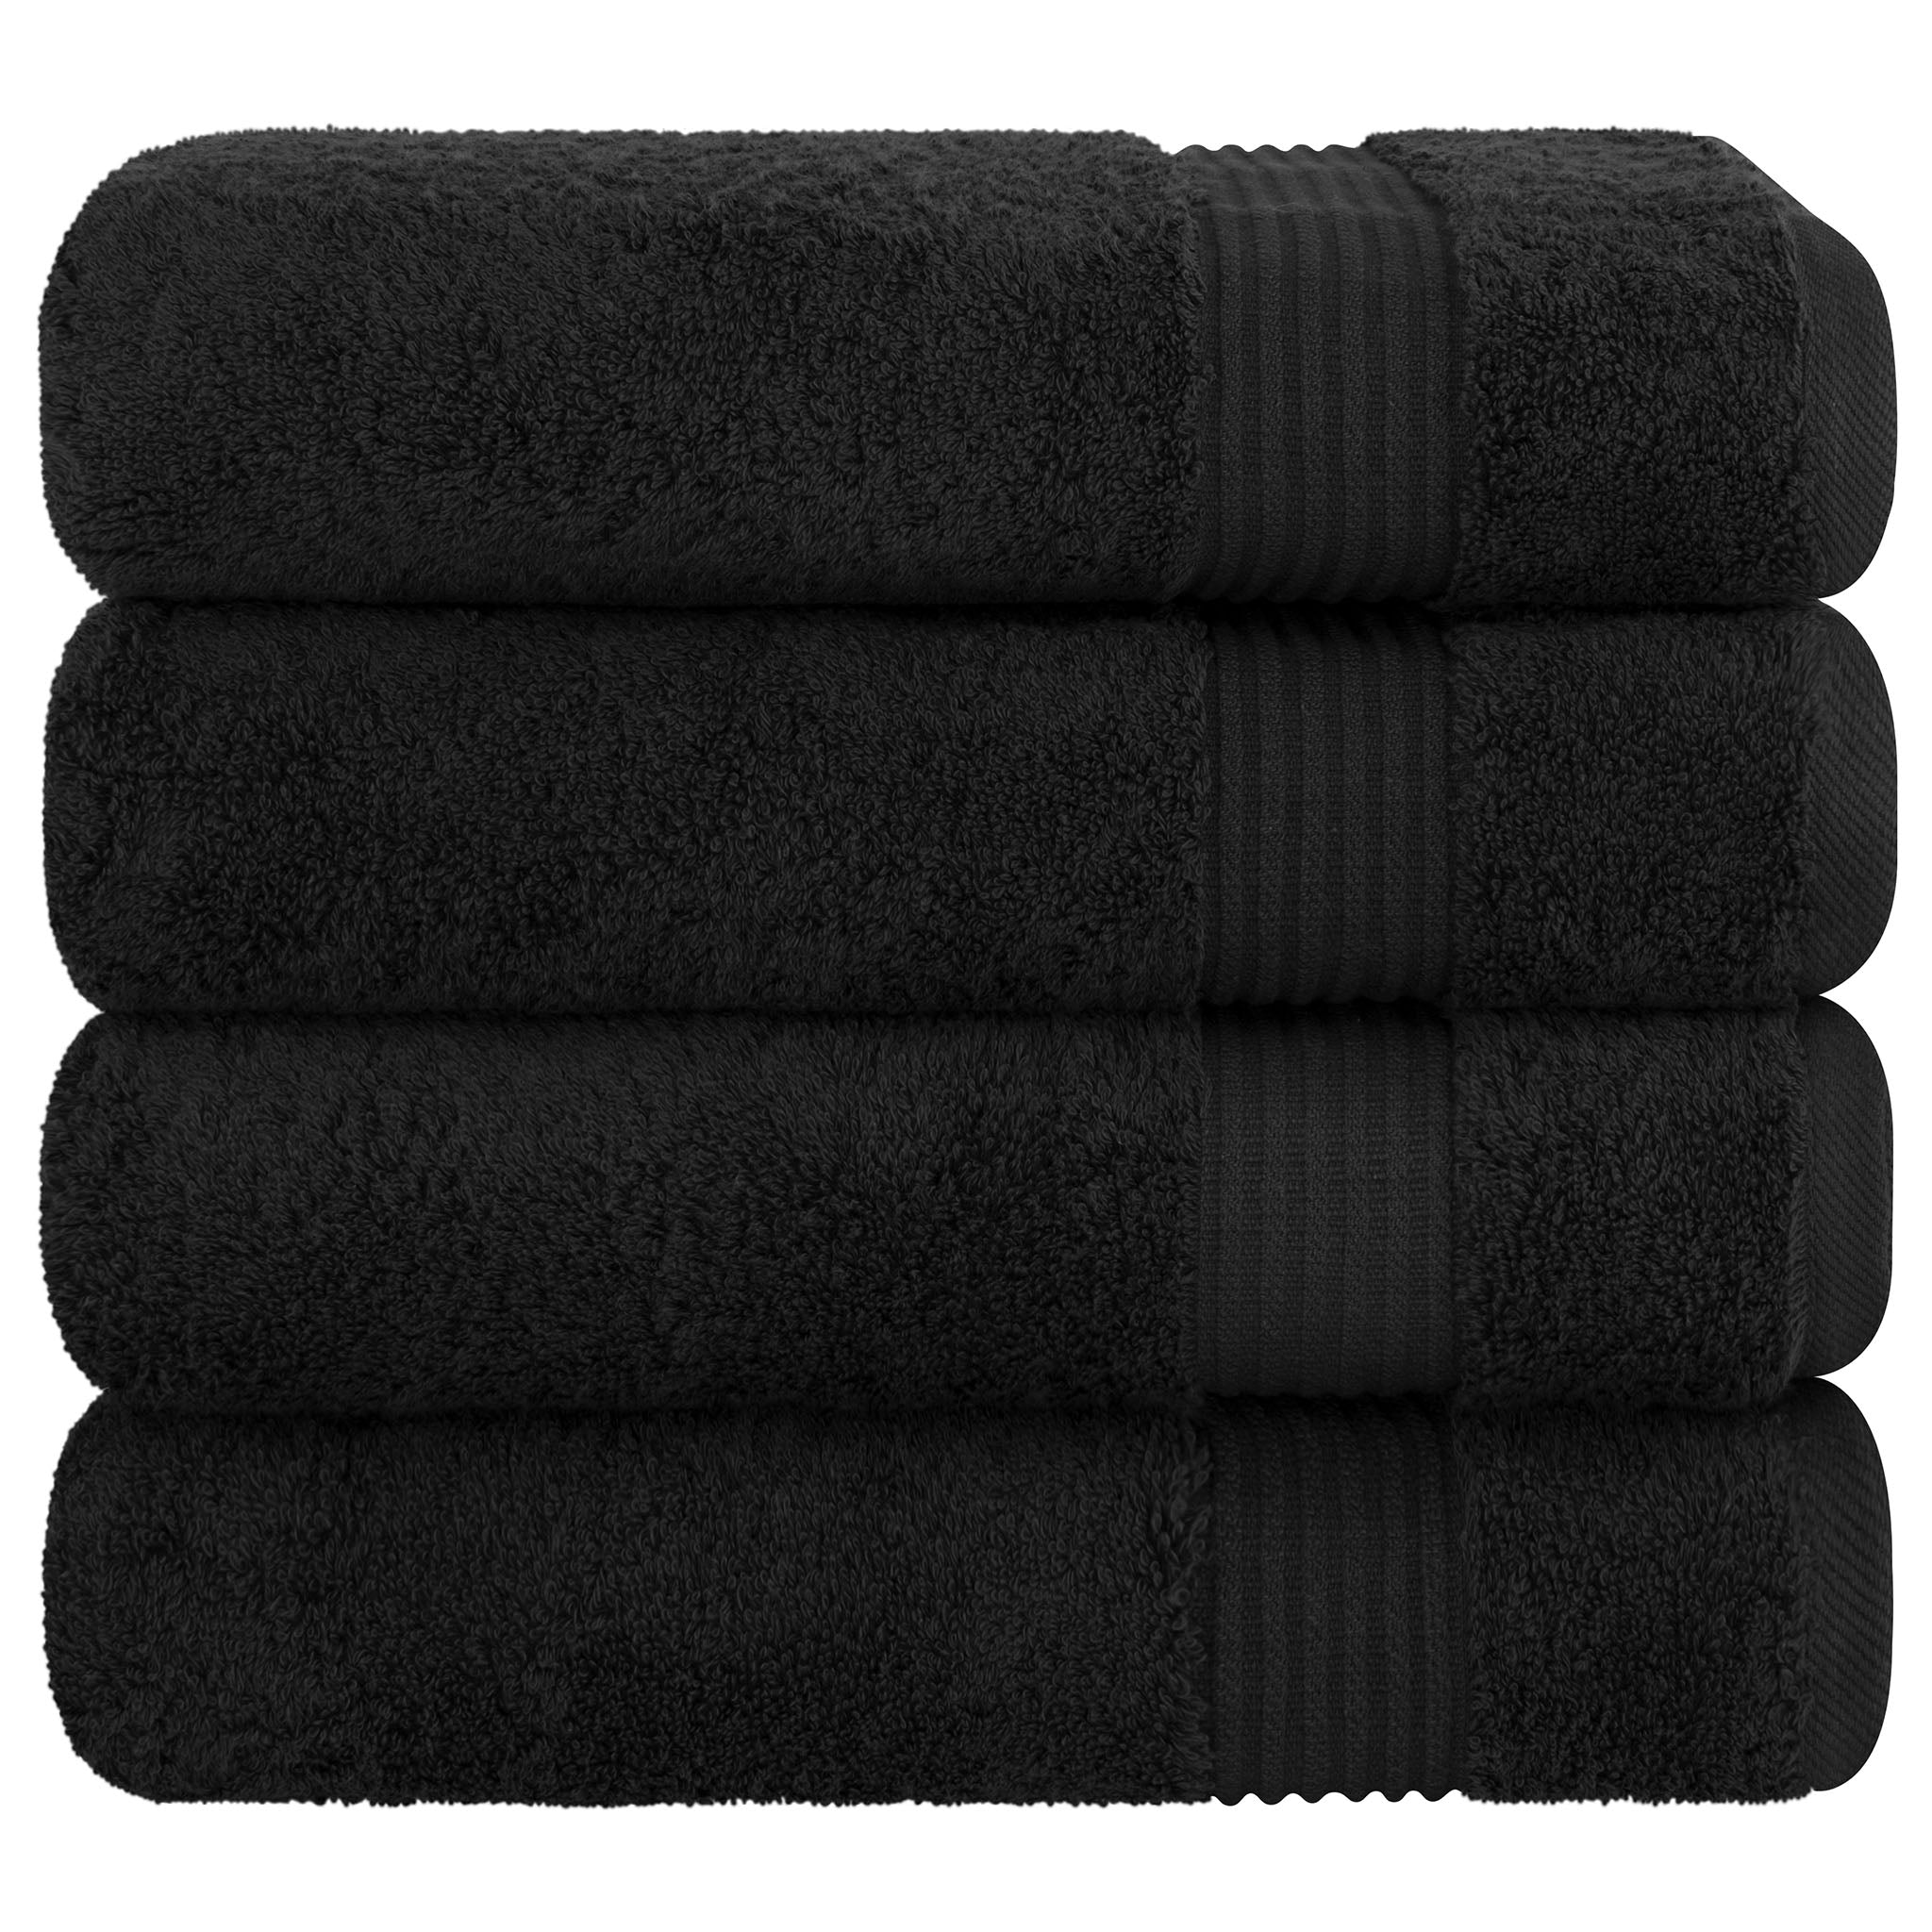 American Soft Linen Bekos 100% Cotton Turkish Towels, 4 Piece Bath Towel Set -black-06